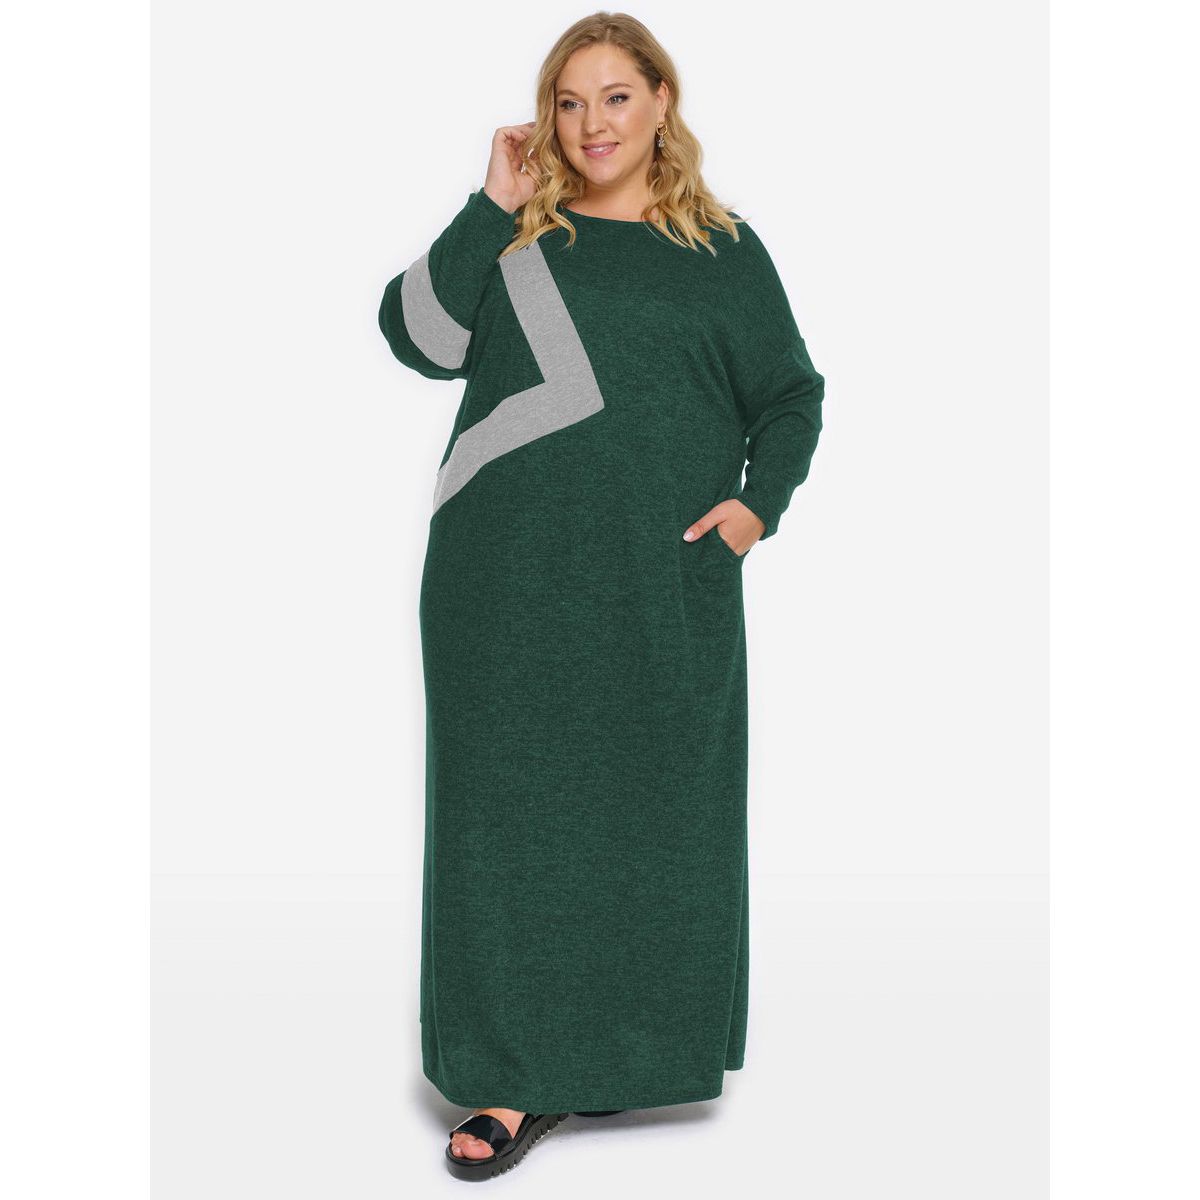 Платье из джерси-меланж с асимметричной отделкой, зеленое, отделка светло-серая